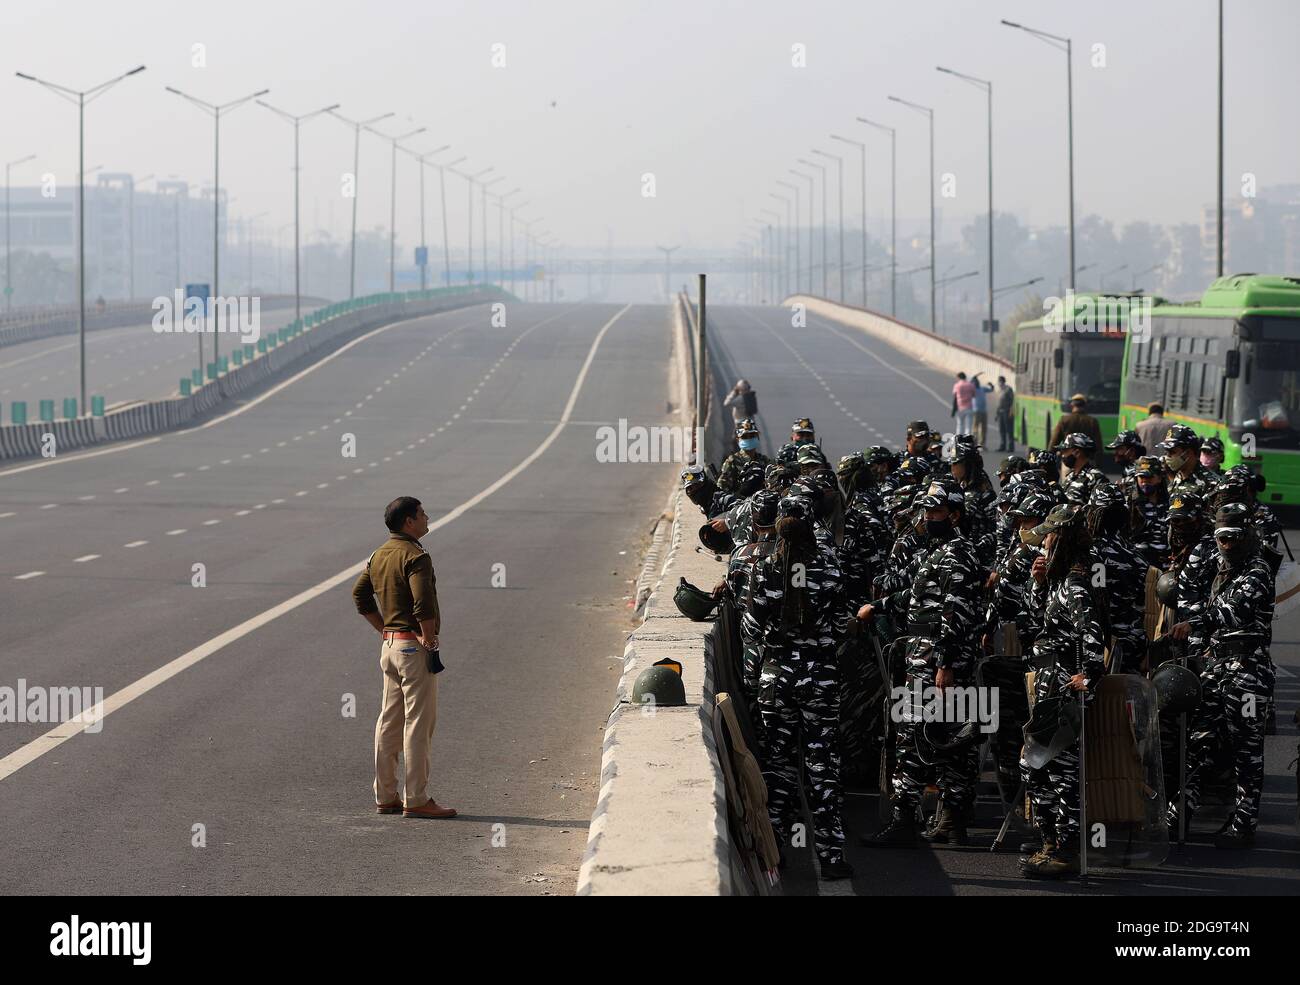 Sicherheitsbeamte auf der Autobahn ergreifen Maßnahmen während des Protests der Bauern gegen die neu verabschiedeten Agrarrechnungen. Hunderte von Bauern blockierten eine Autobahn während ihres landesweiten Protestes gegen die neu übergebenen Agrarrechnungen an der Delhi-Uttar Pradesh-Grenze in Neu-Delhi. Stockfoto